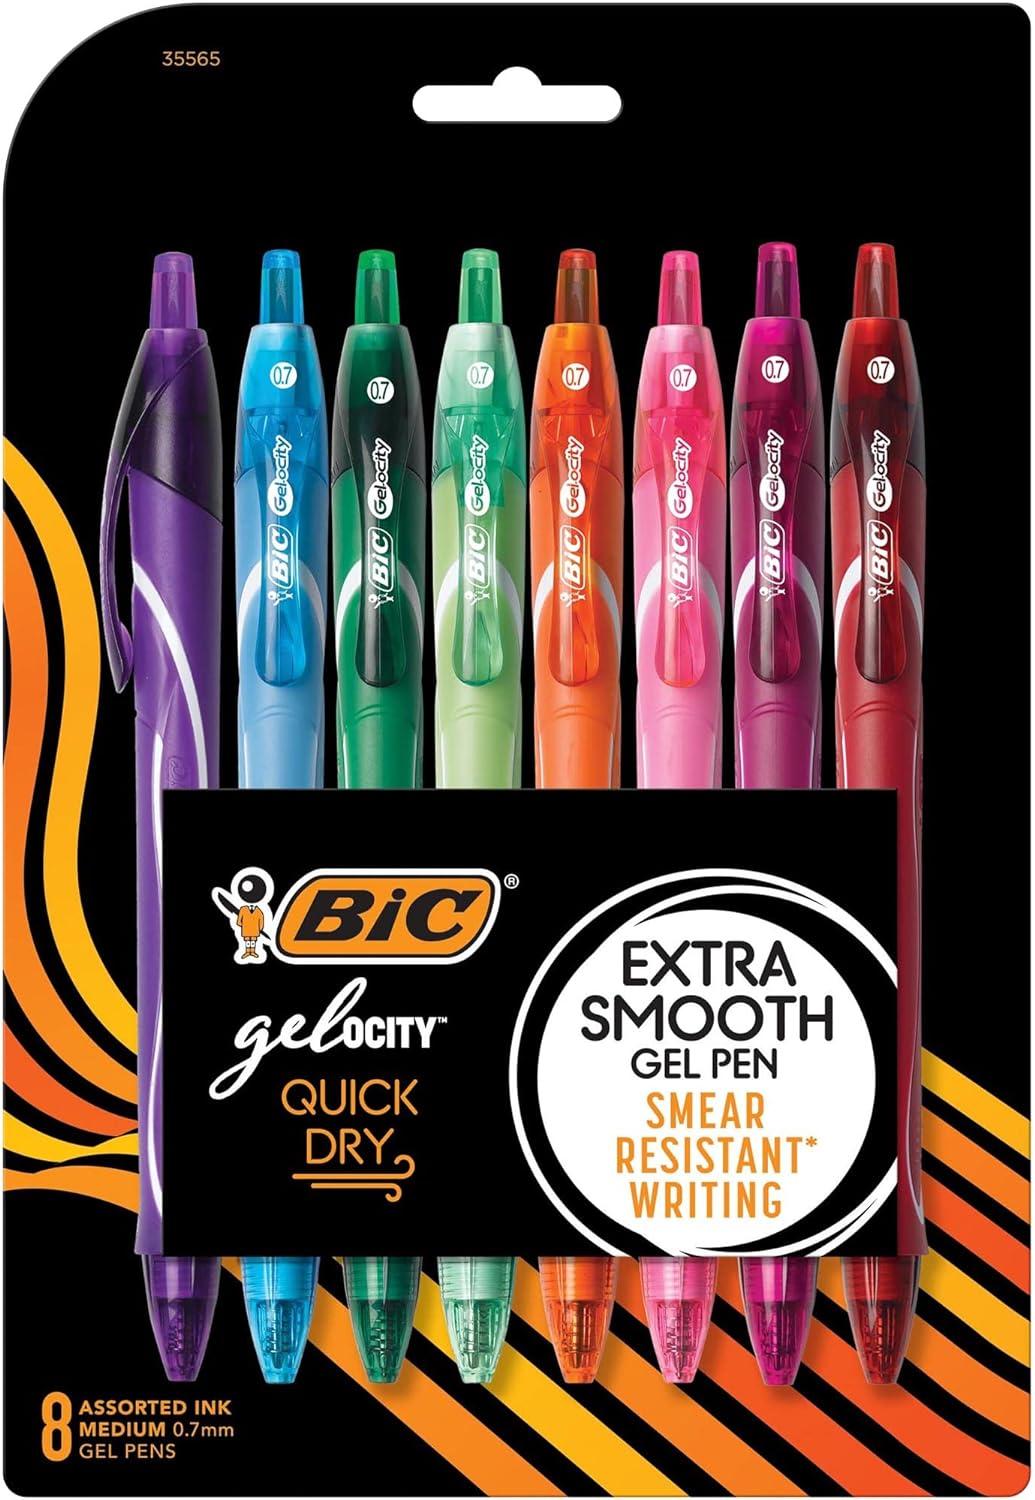 bic gel-ocity quick dry special edition fashion gel pen medium point 0 7mm assorted colours  bic b01n5tkjbh